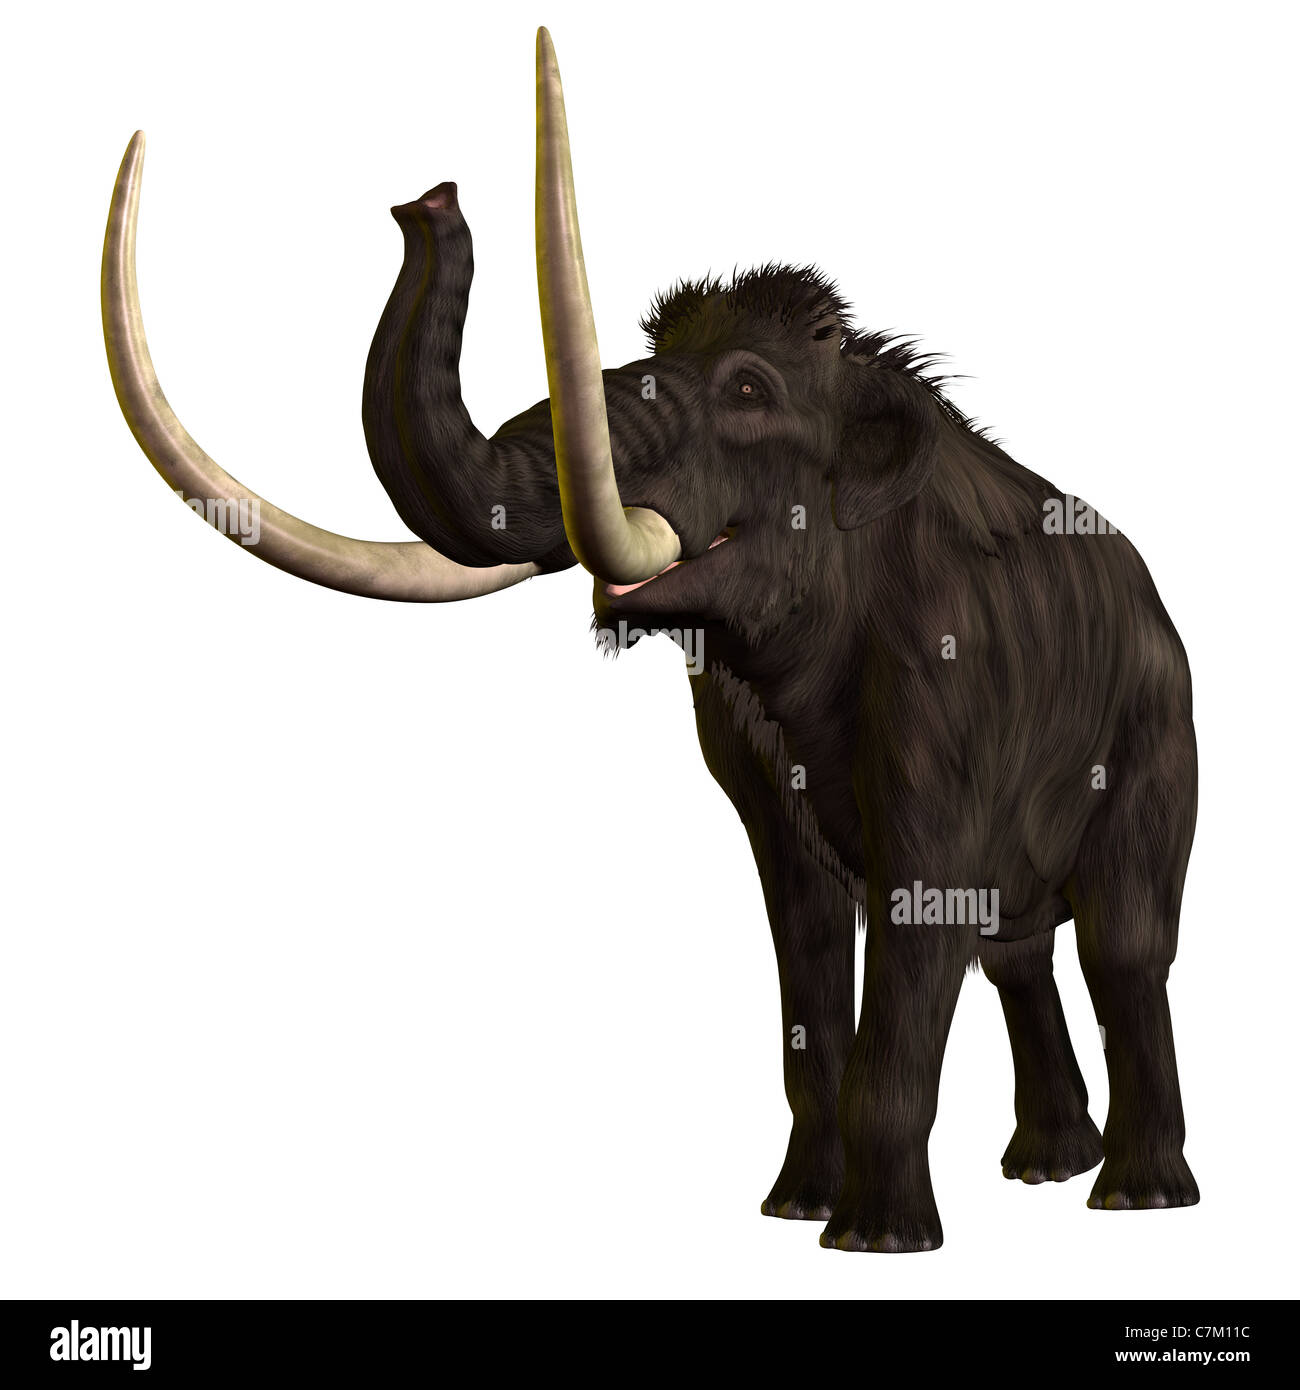 Das Wollhaarmammut ist ein ausgestorbener Elefant wie Riese aus der Pleistocene Periode von Erden-Geschichte. Stockfoto